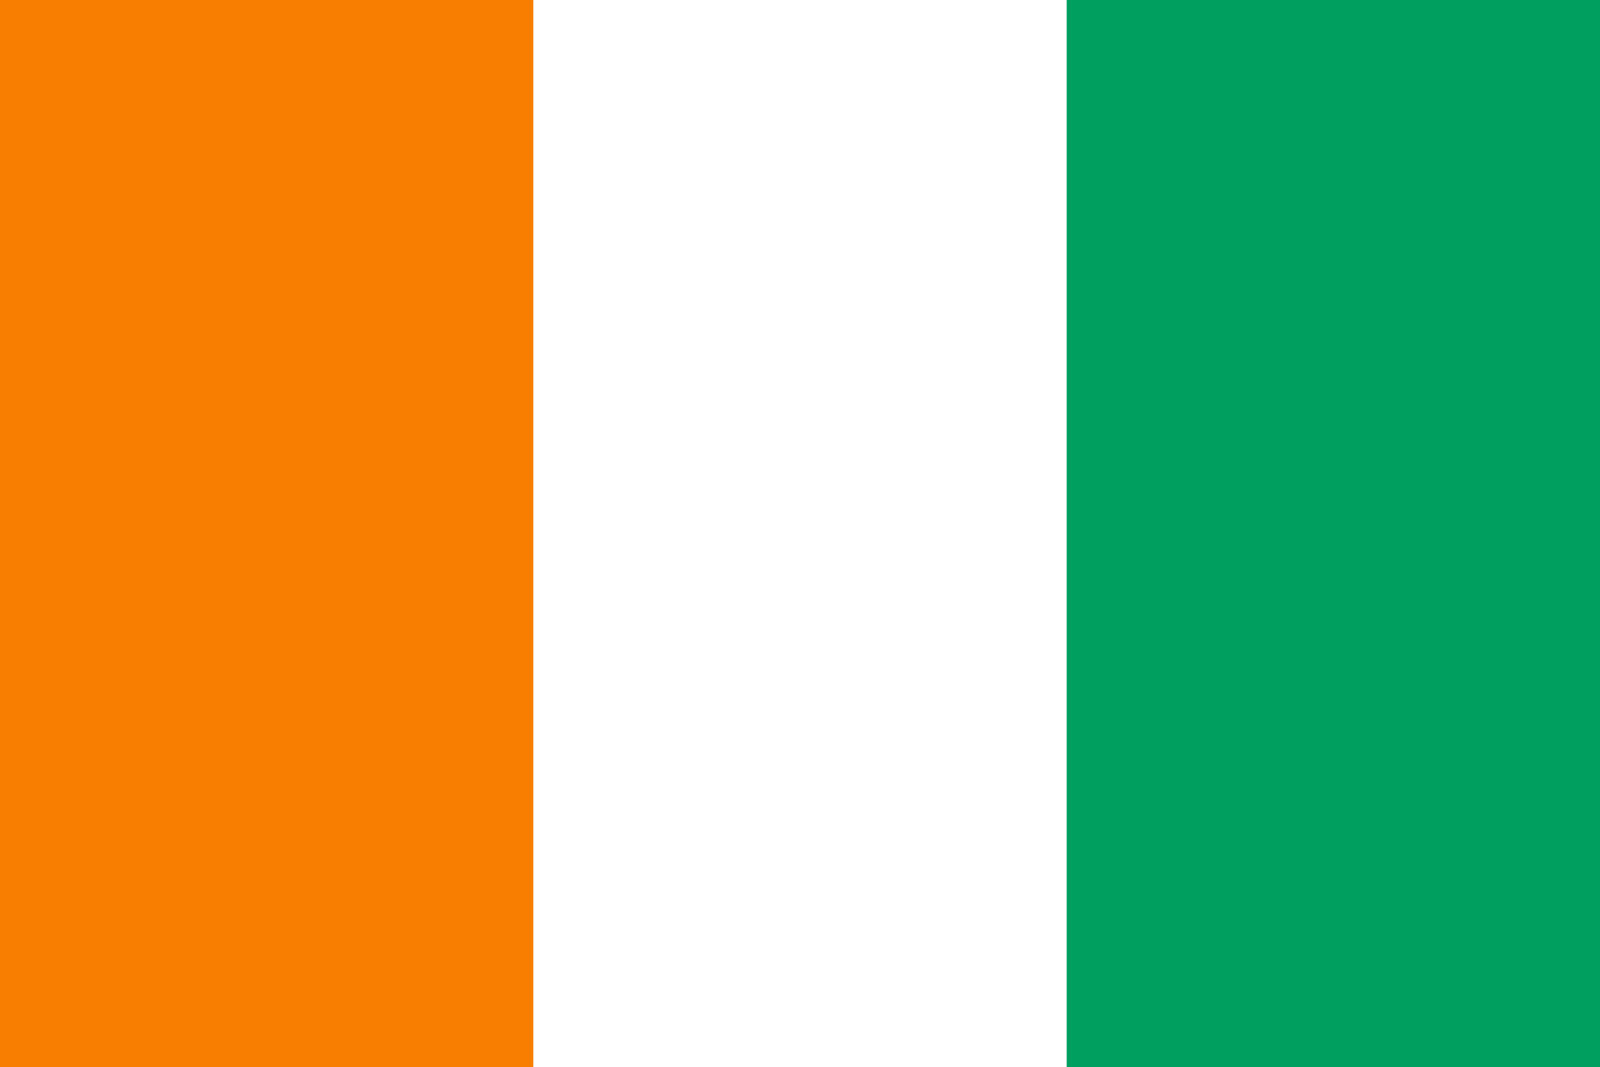 Det ivorianske flag